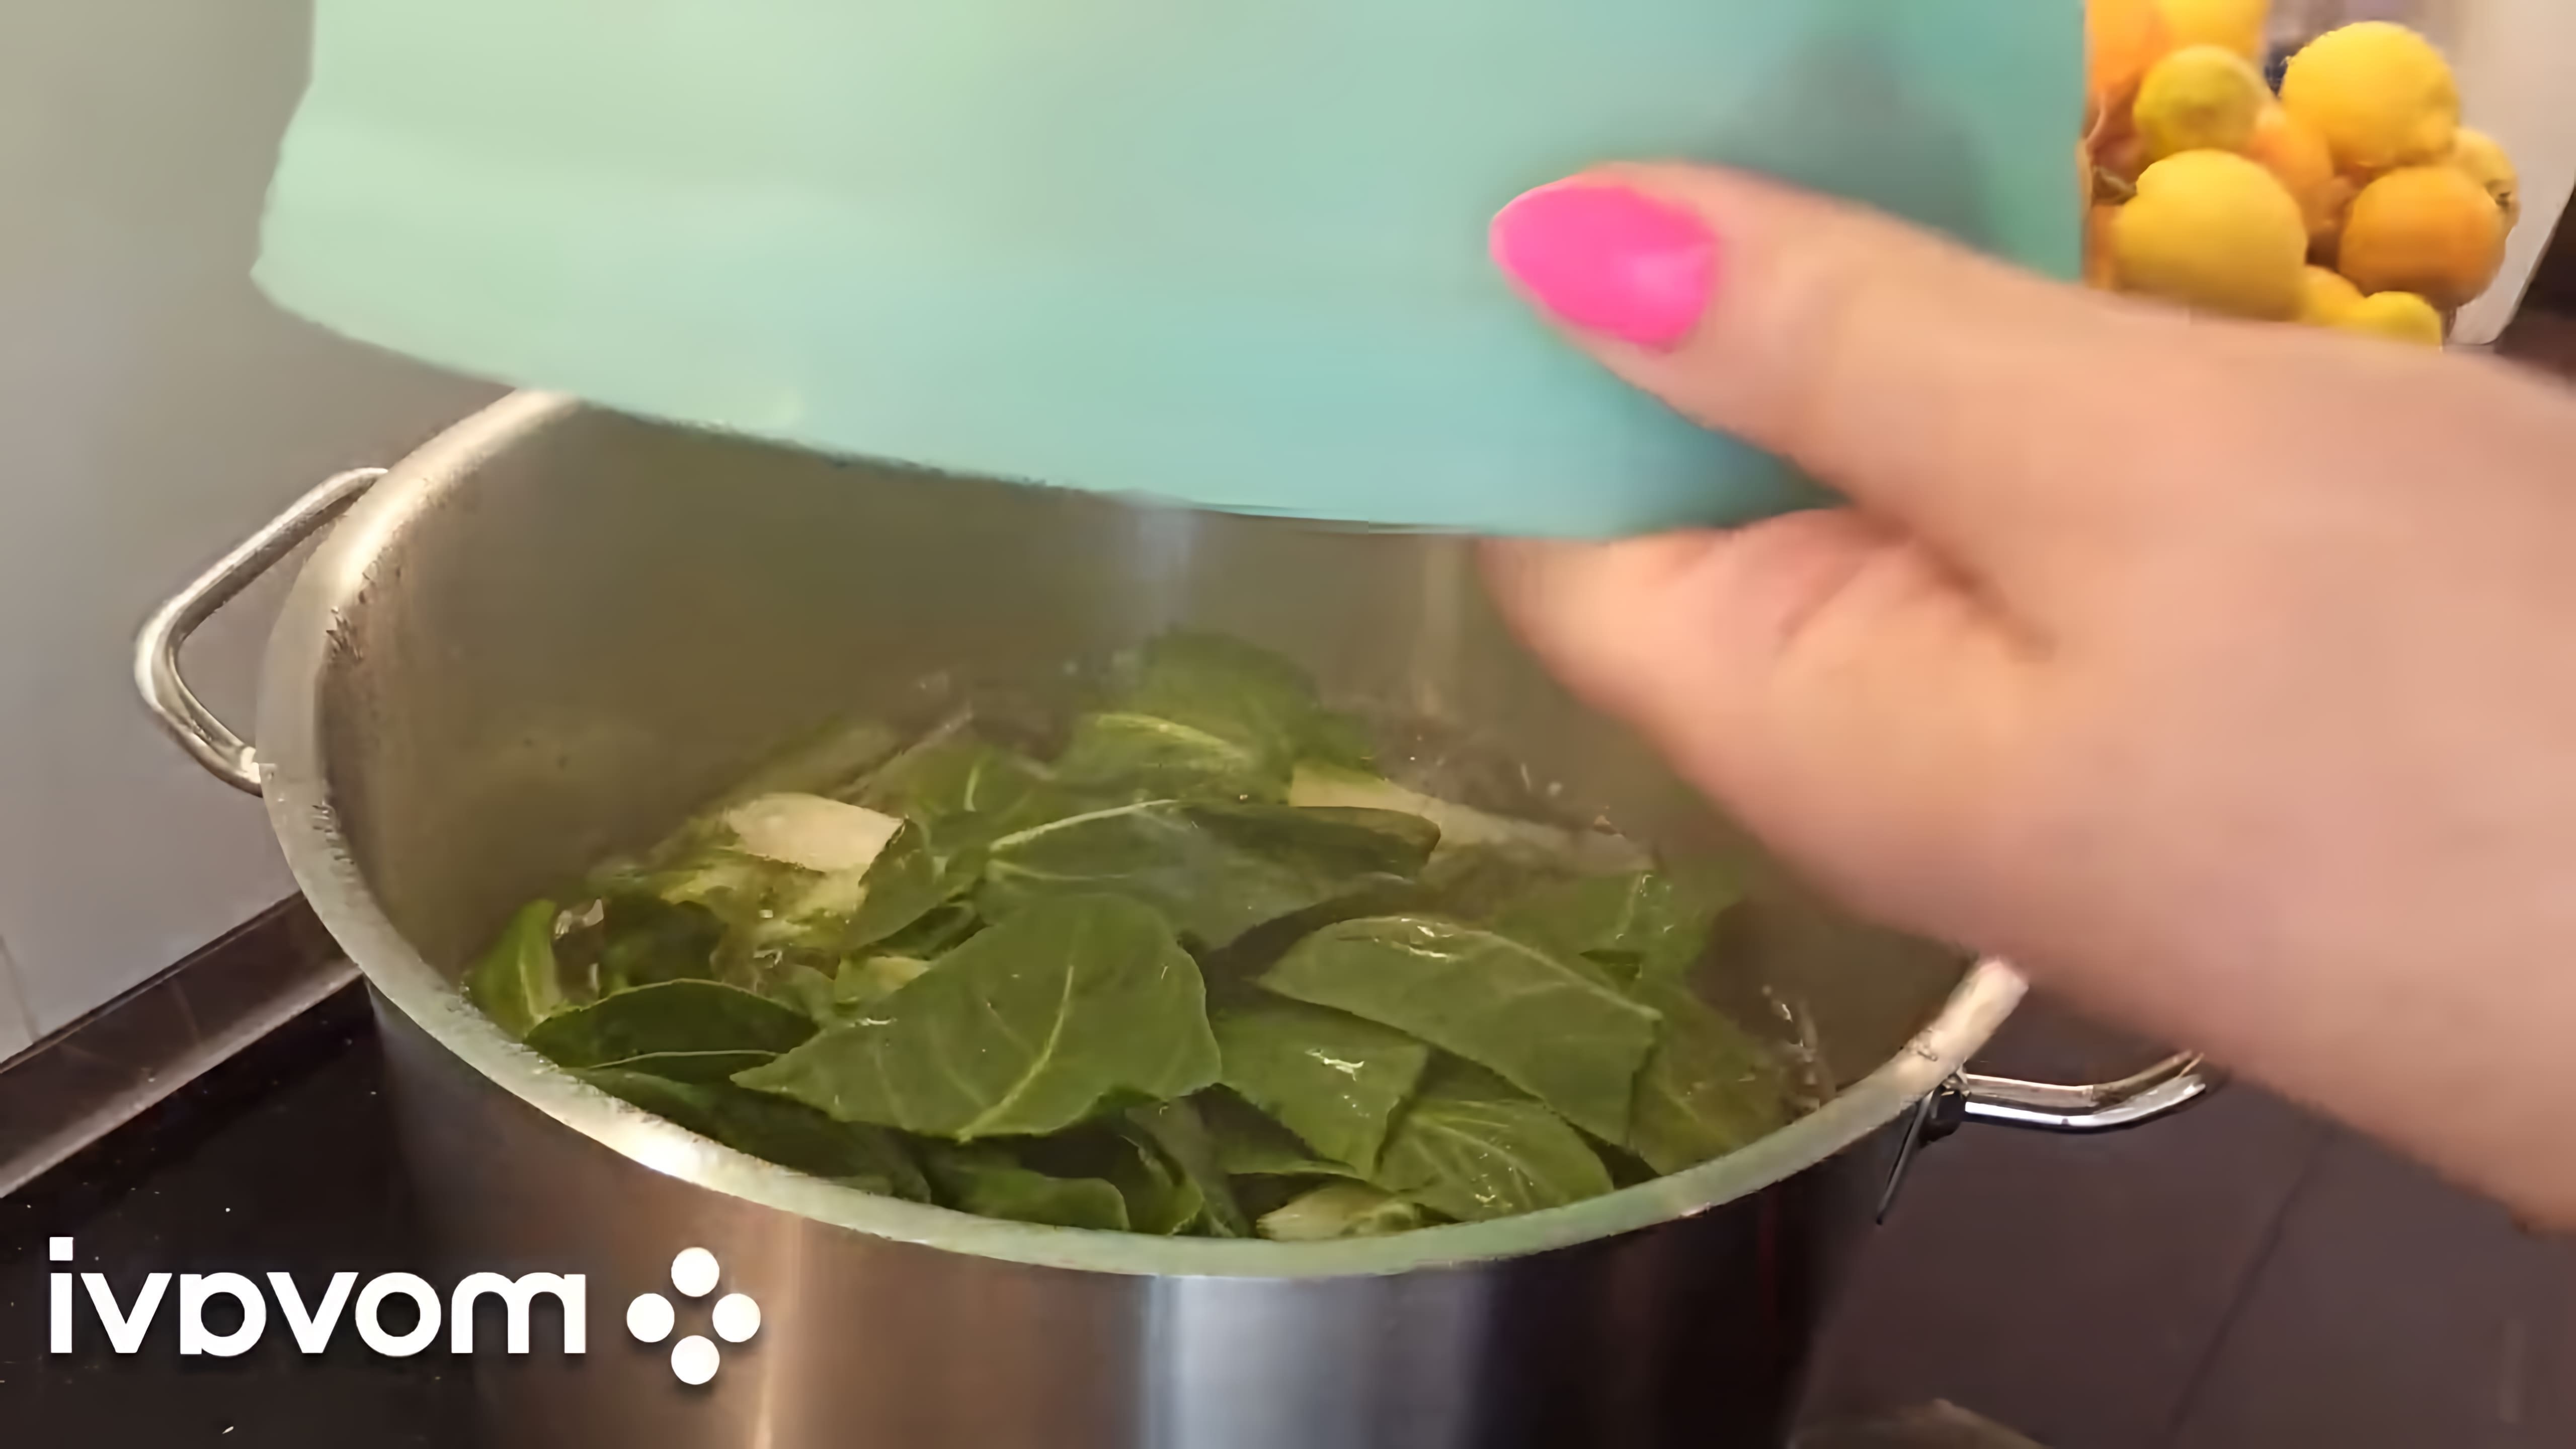 В этом видео демонстрируется рецепт приготовления мангольда, который является разновидностью свеклы